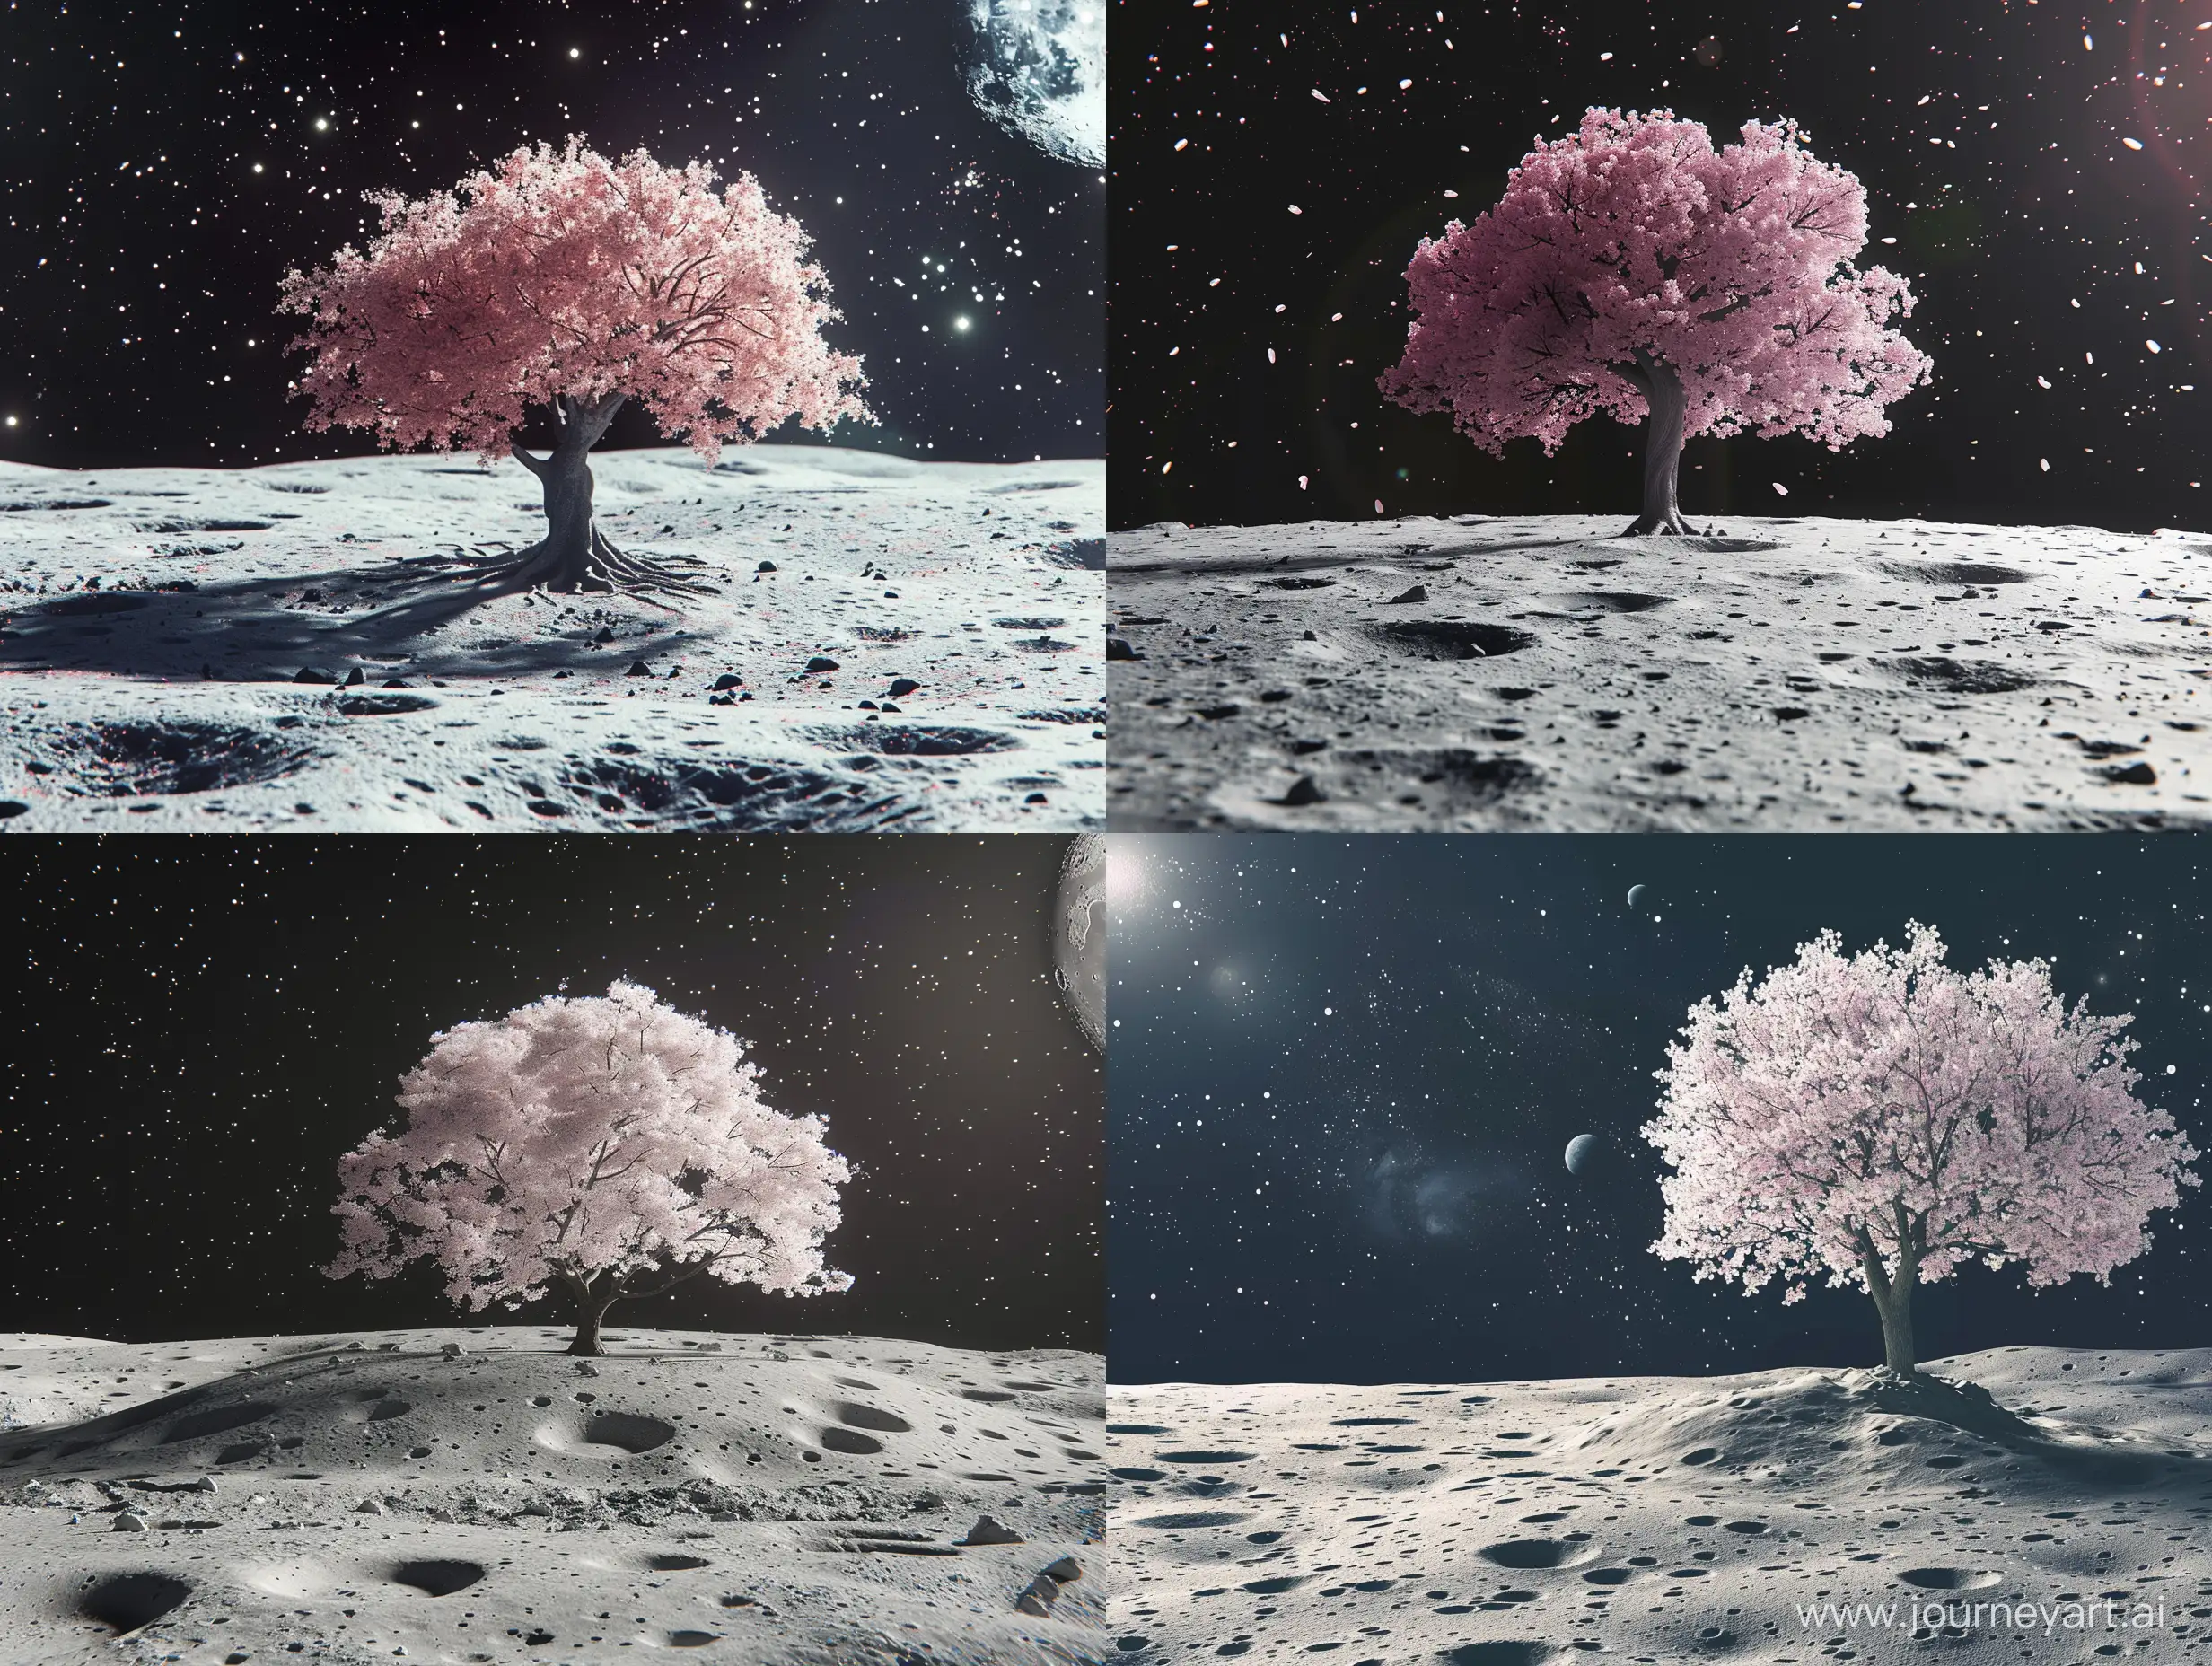 A sakura tree on the moon surface, realistic